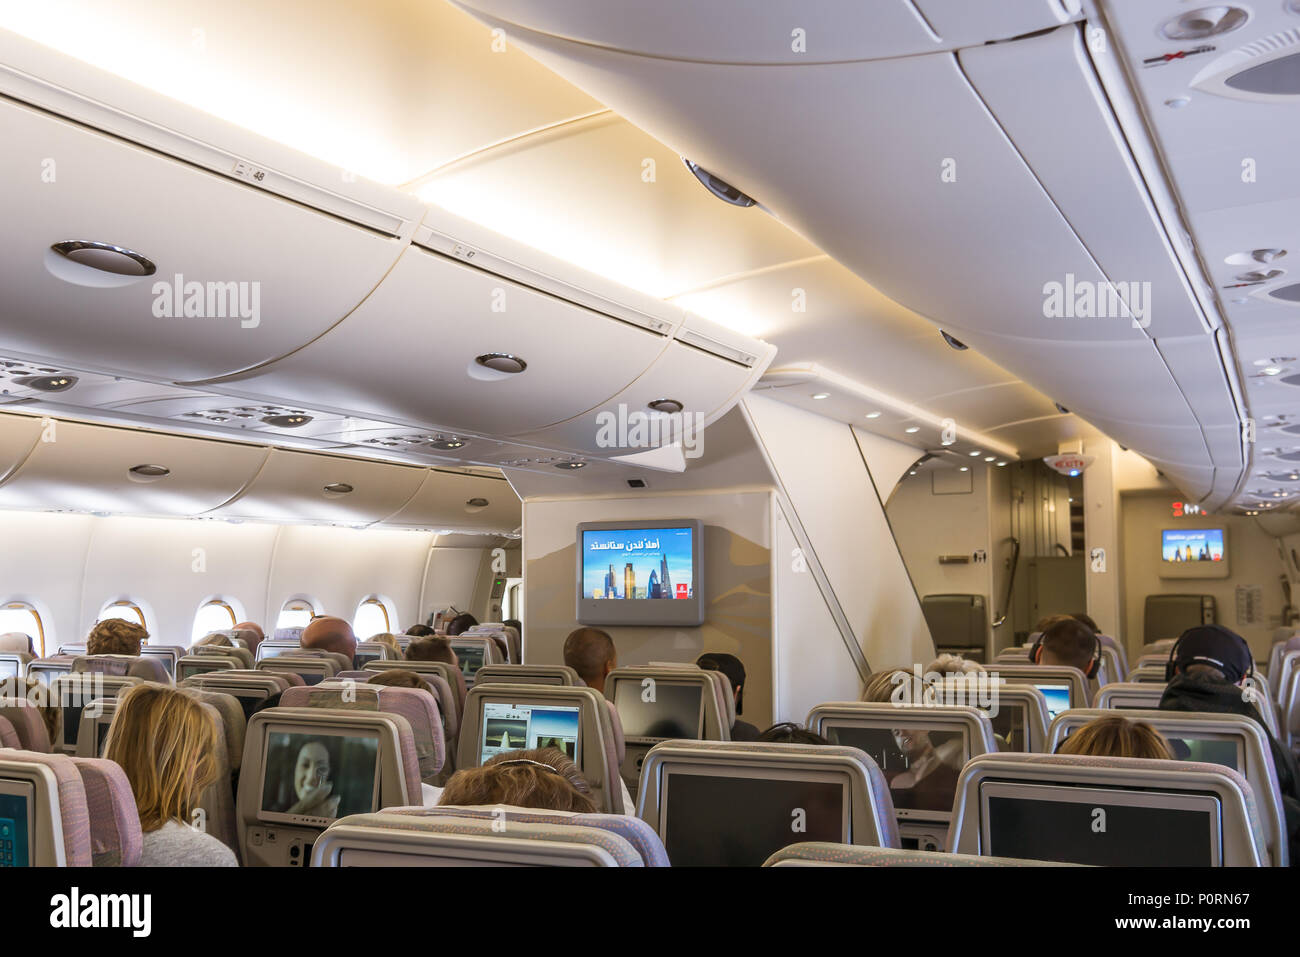 Das untere Deck der Airbus A380, a double-deck Jet Airliner mit exzellenten Komfort und Platz, Kopenhagen, 27. April 2018 Stockfoto